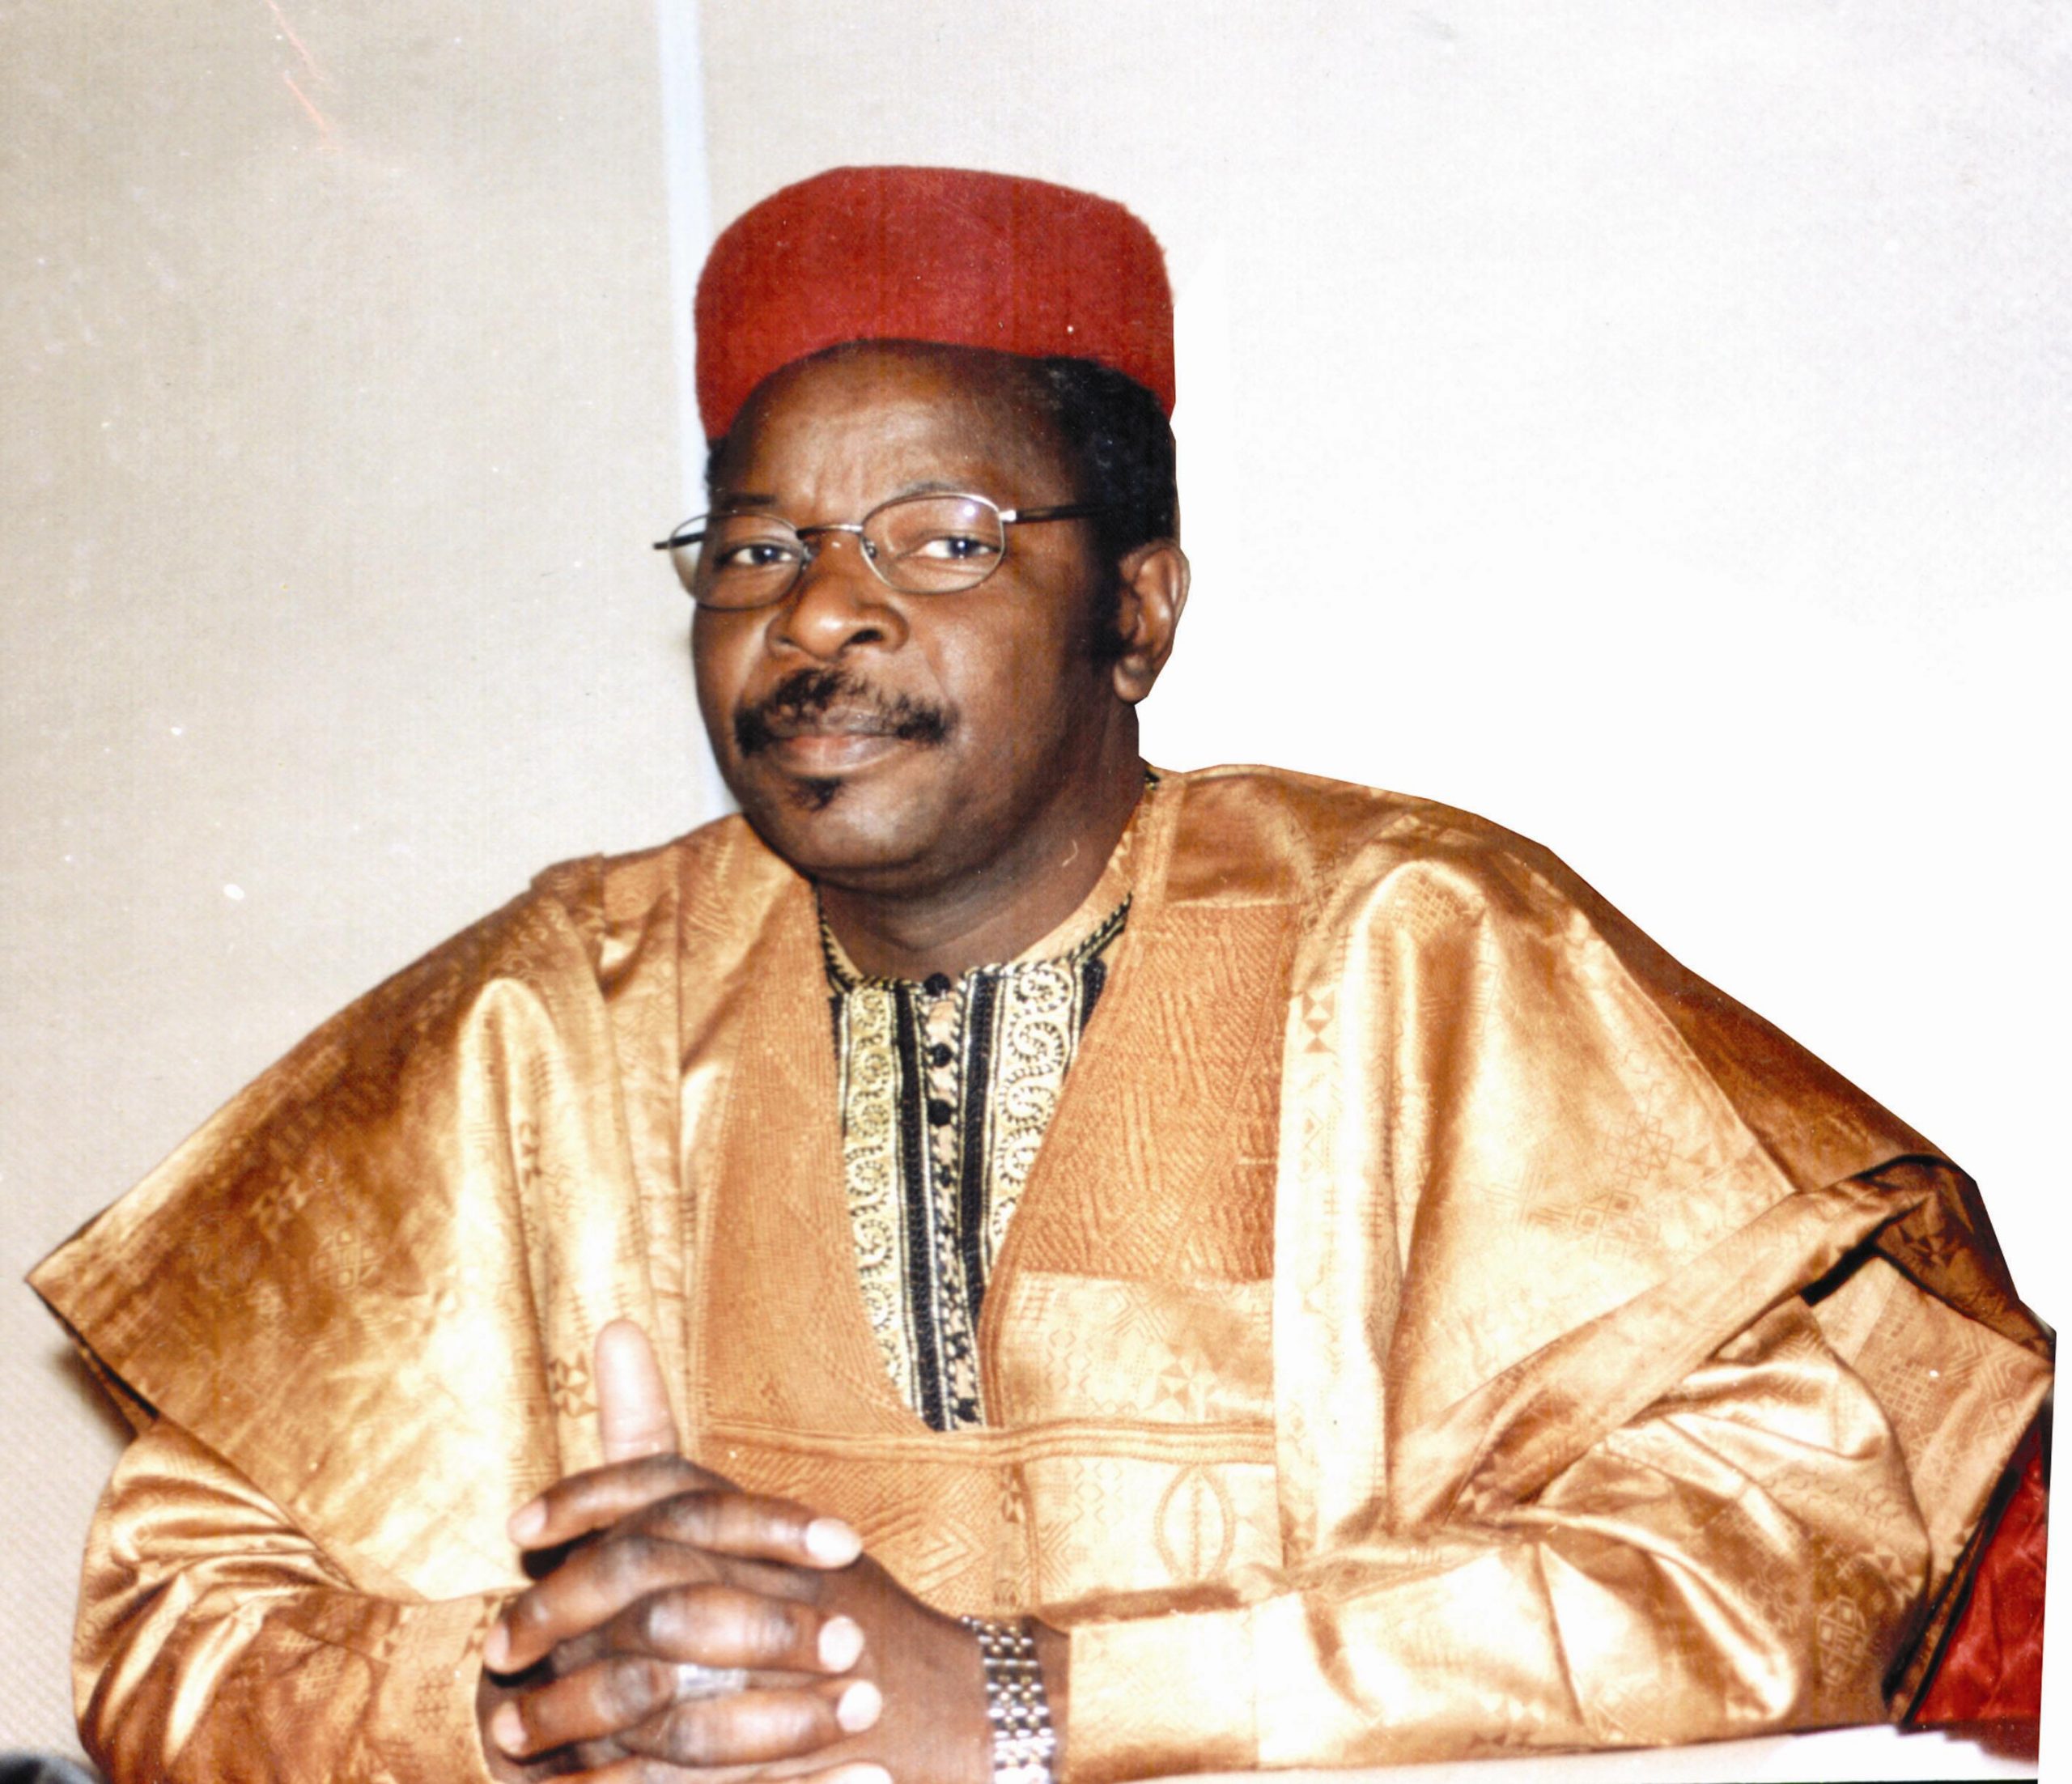 Portrait de Mahamane Ousmane candidat au 2ème tour de la présidentielle au Niger